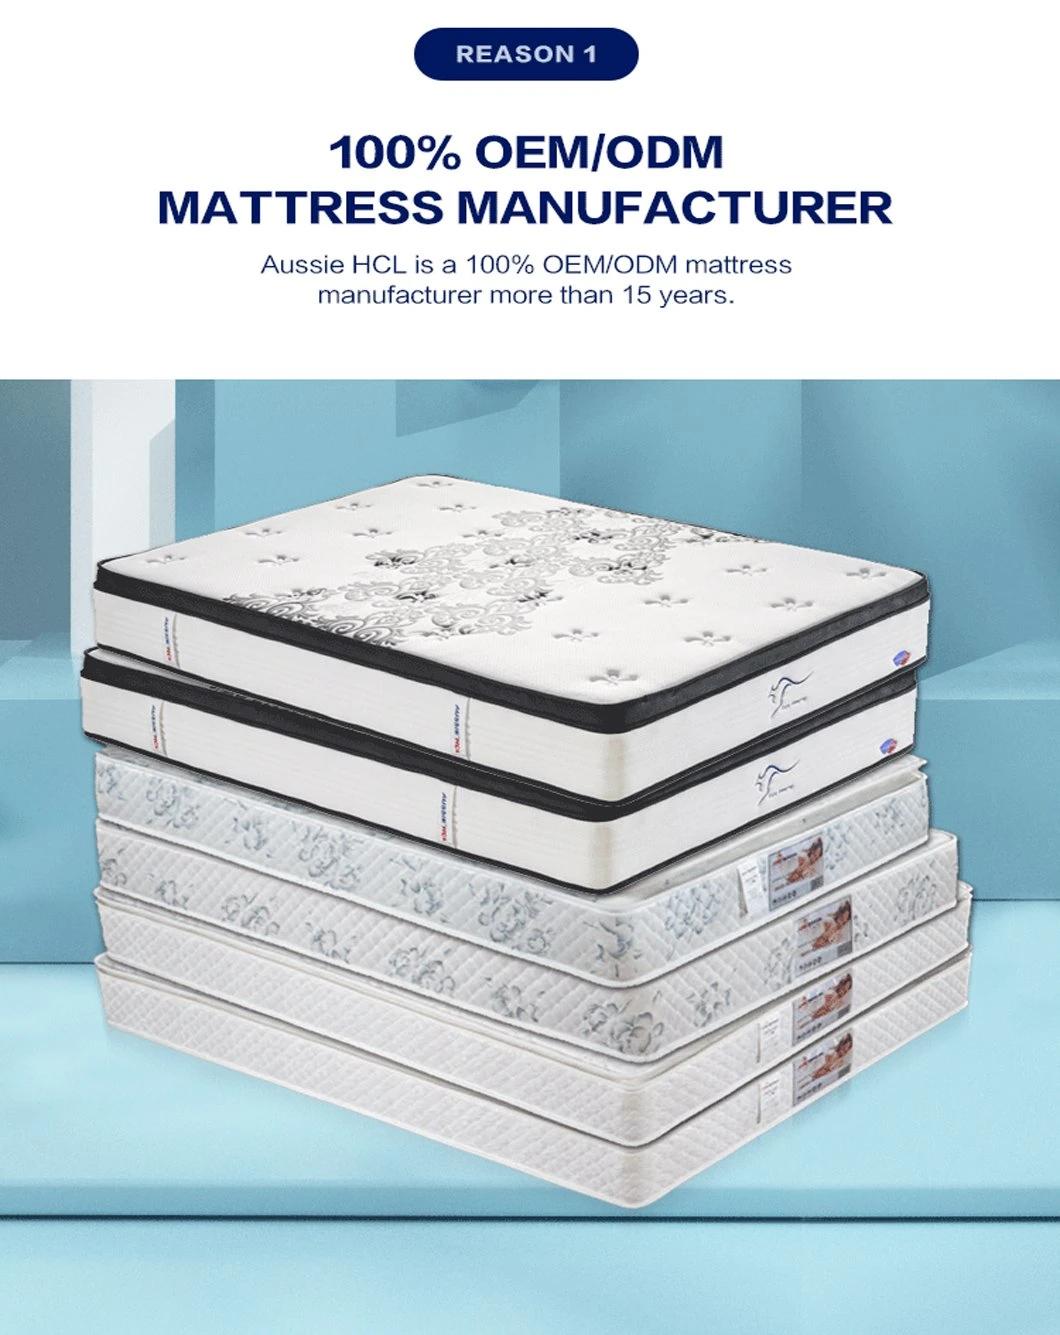 Factory Aussie Single Shop Double Full King Mattresses Sleeping Well High Density Swirl Memory Gel Rebonded Foam Mattress